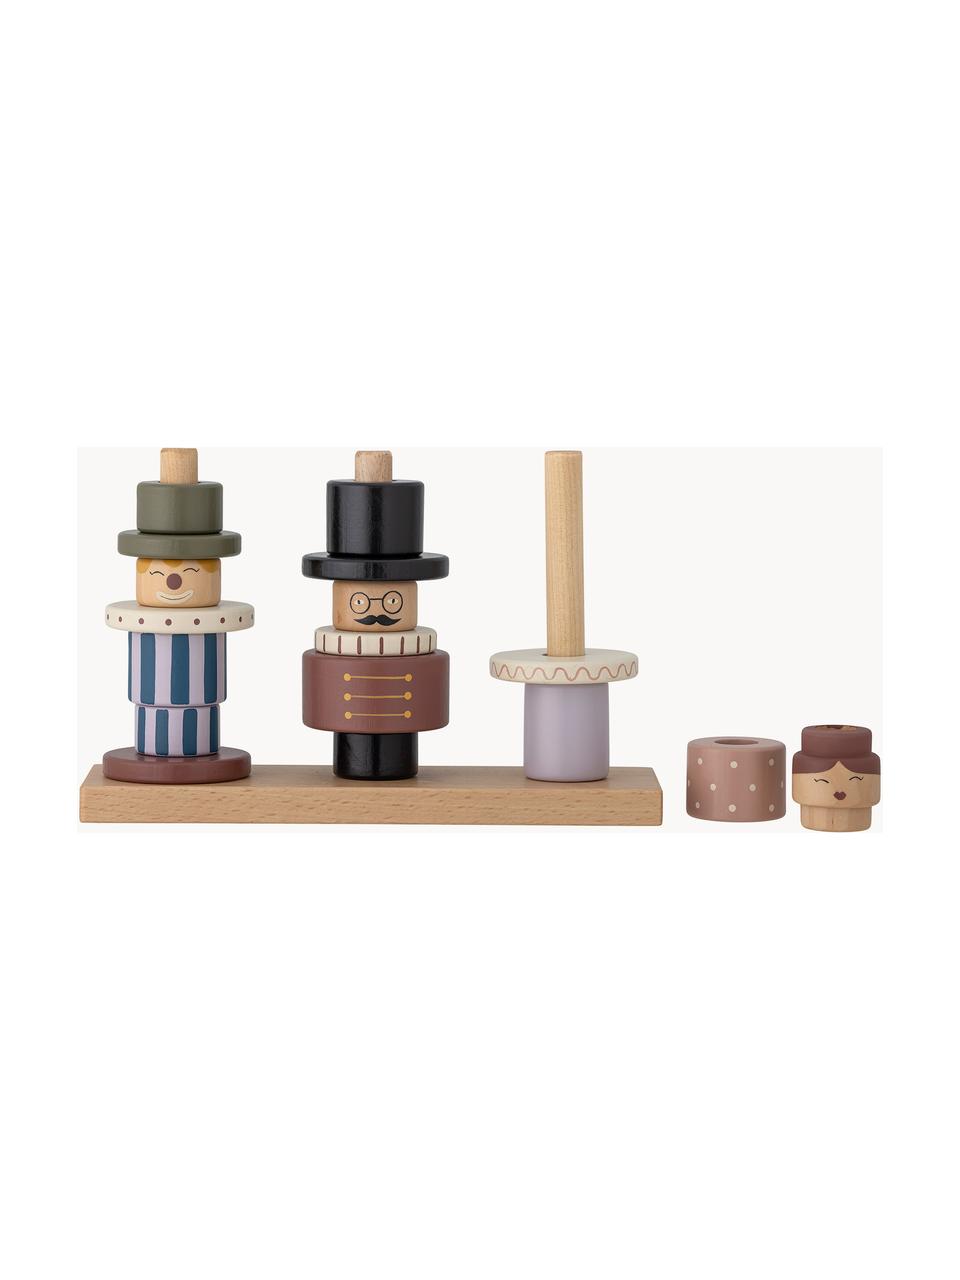 Aktivity hračka Wilma, Lotosové dřevo, bukové dřevo, dřevovláknitá deska střední hustoty (MDF), Světlé dřevo, více barev, Š 23 cm, V 15 cm